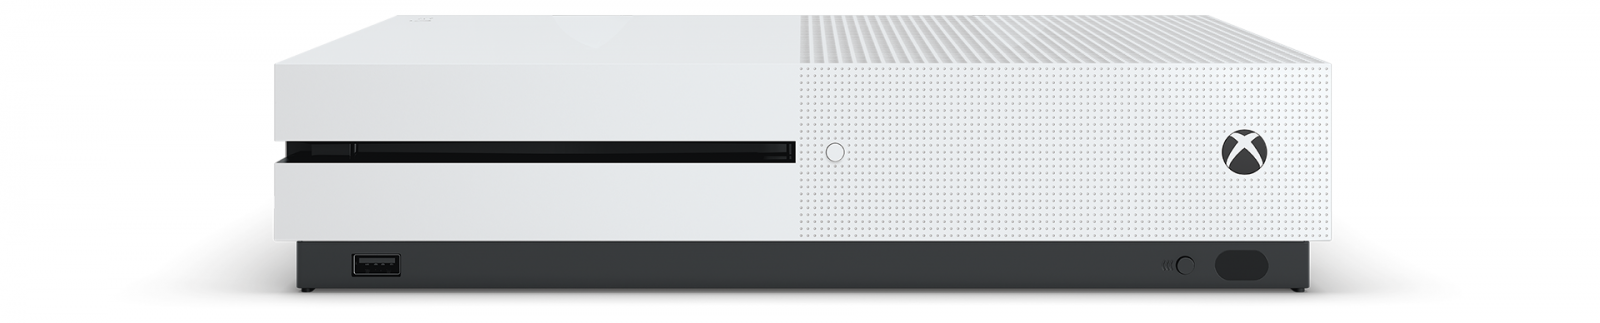 Xbox One S 500GB с двумя джойстиками image1